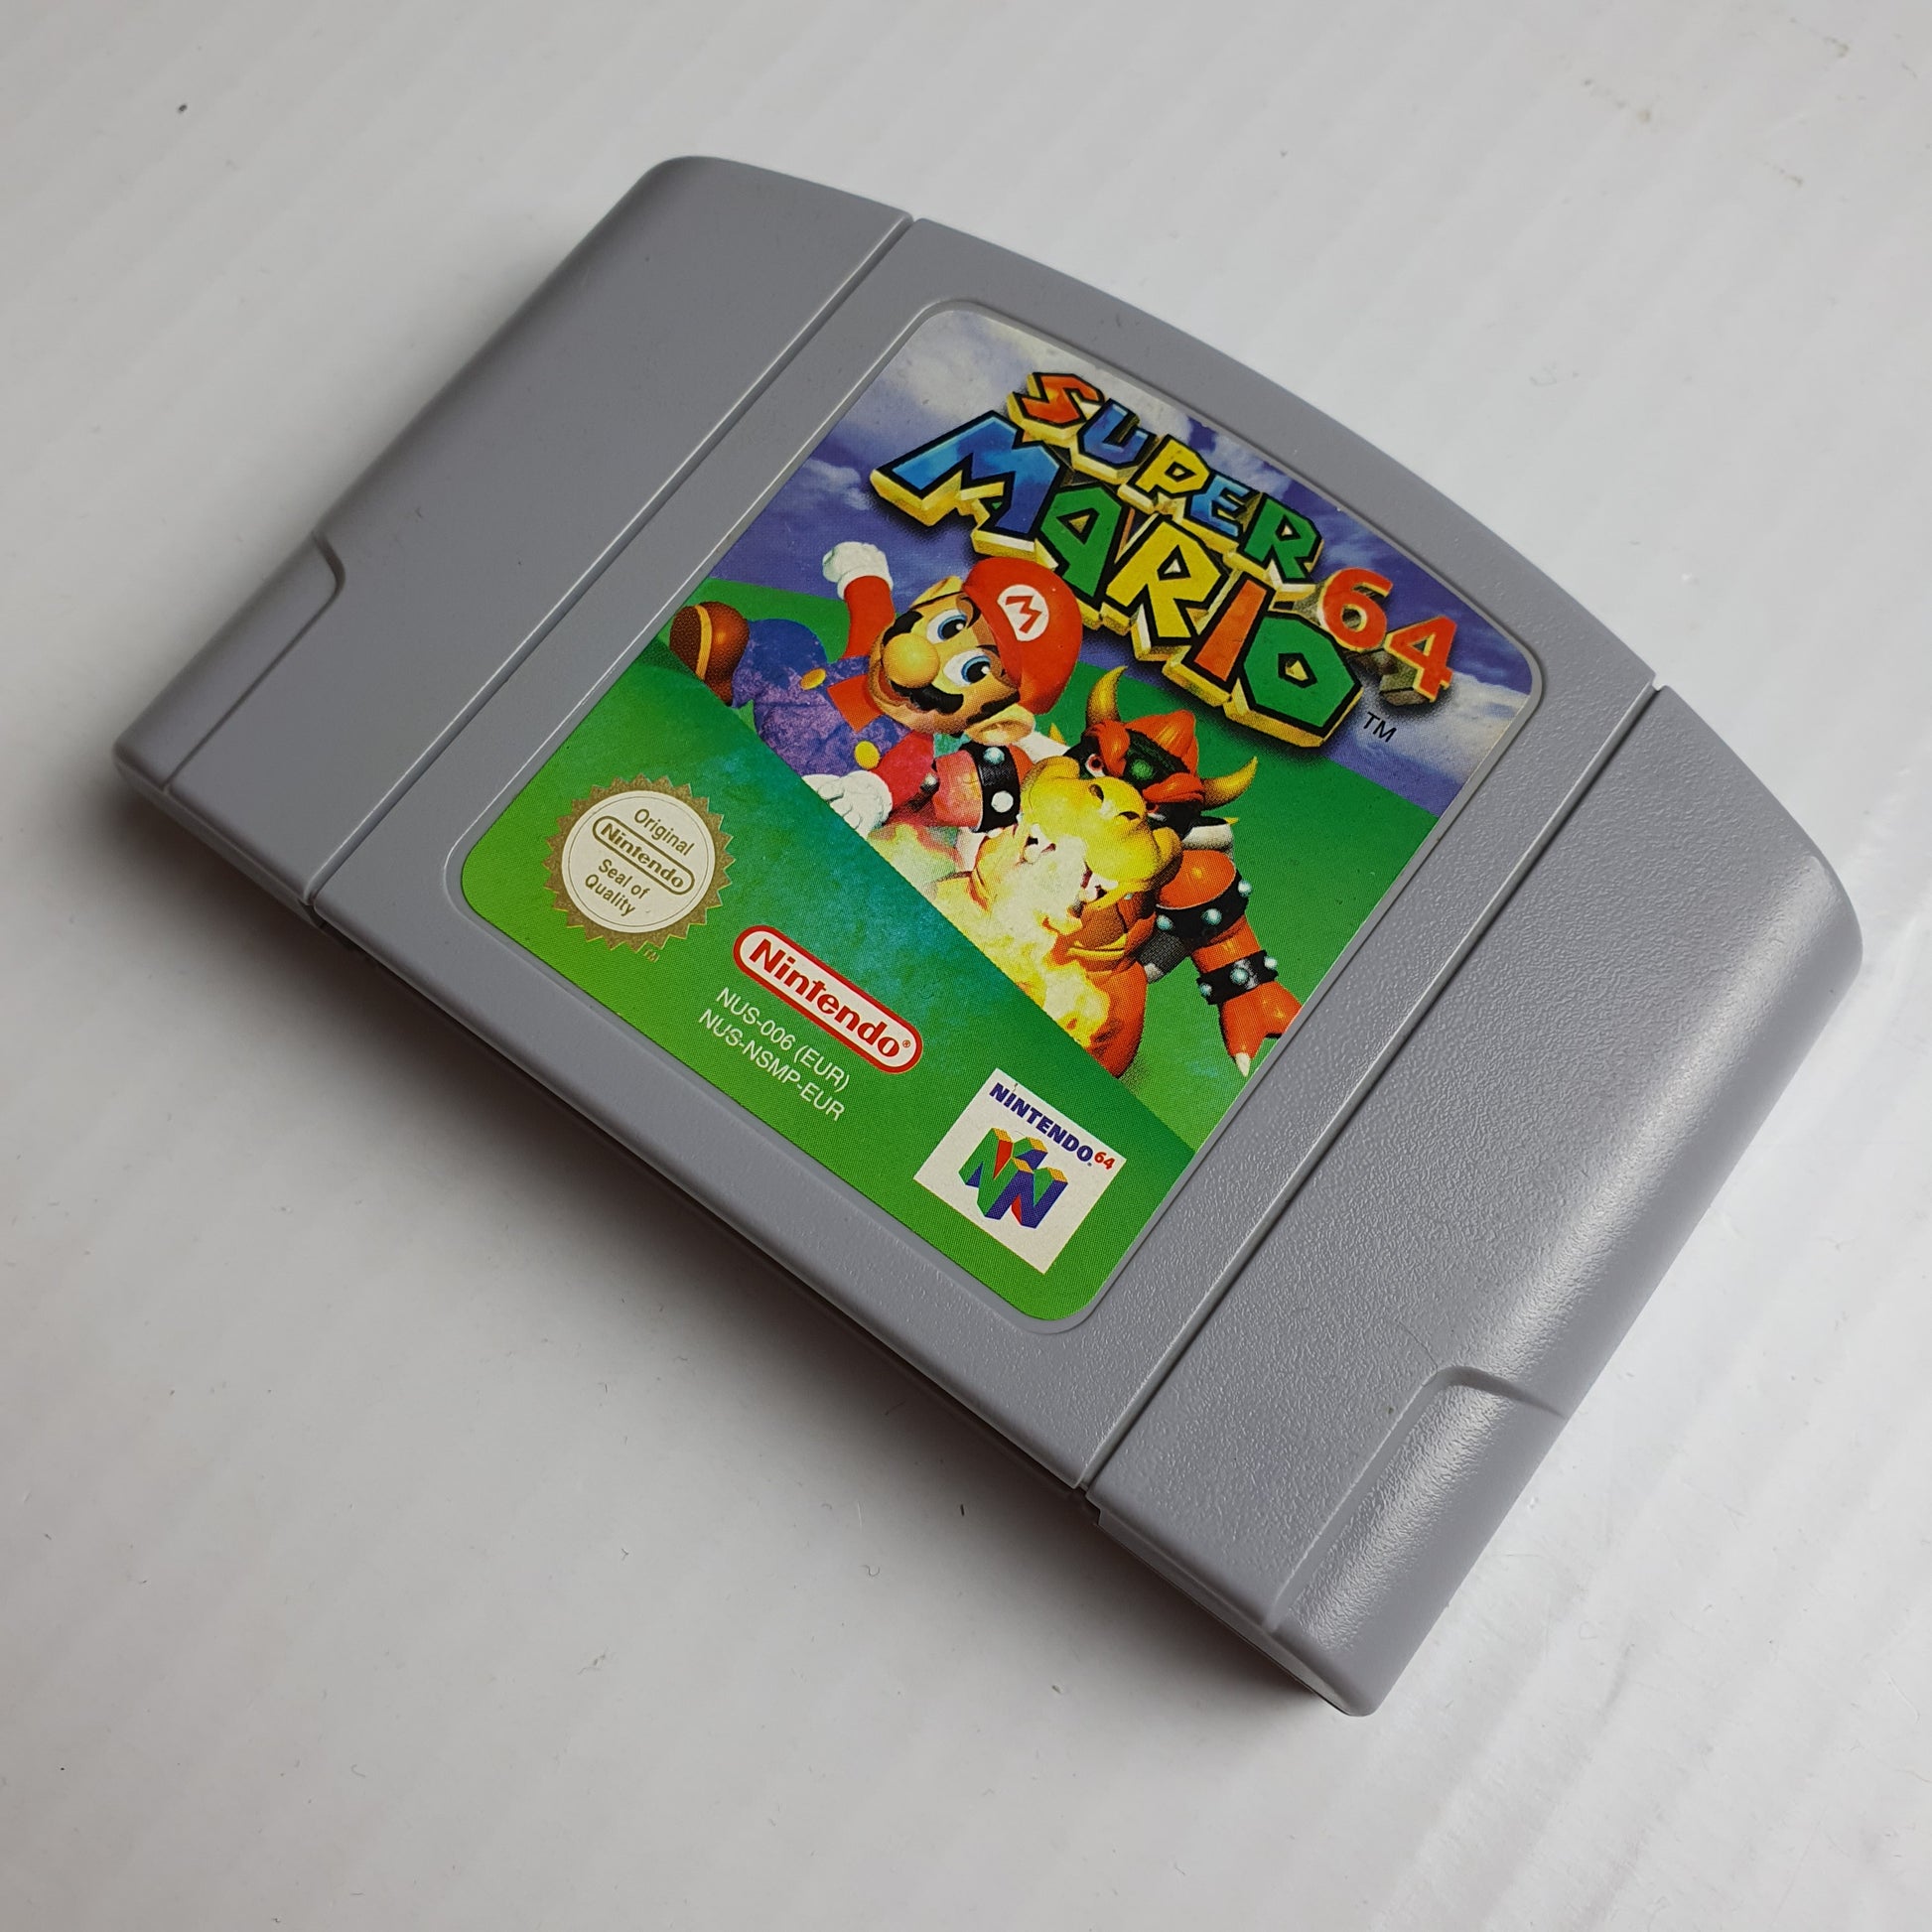 Super Mario 64 - Nintendo 64